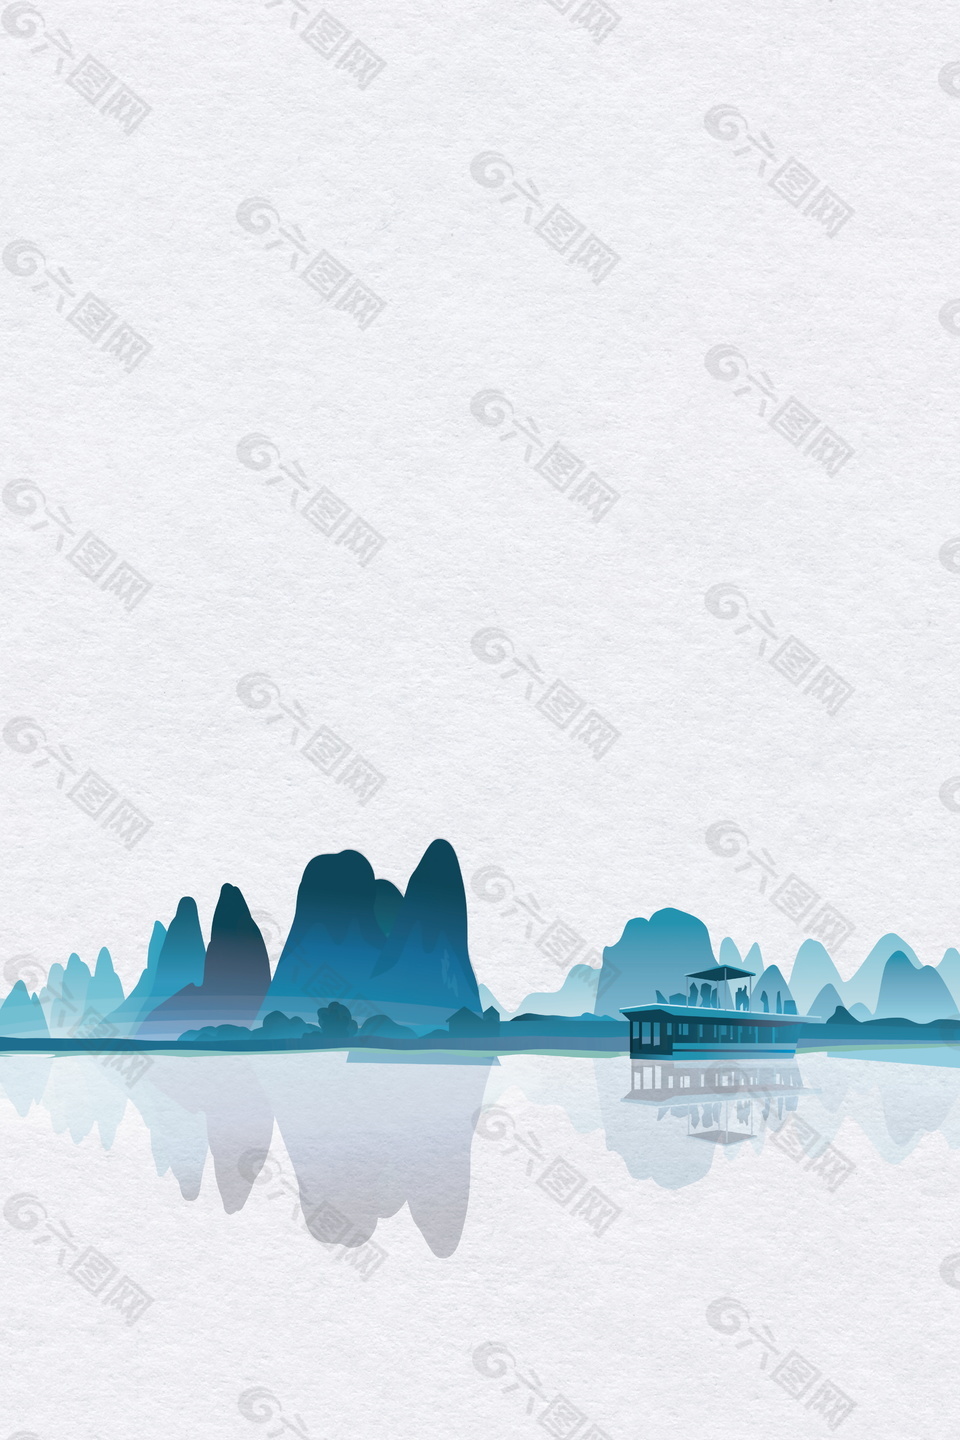 简约白露节气桂林山水风景背景素材